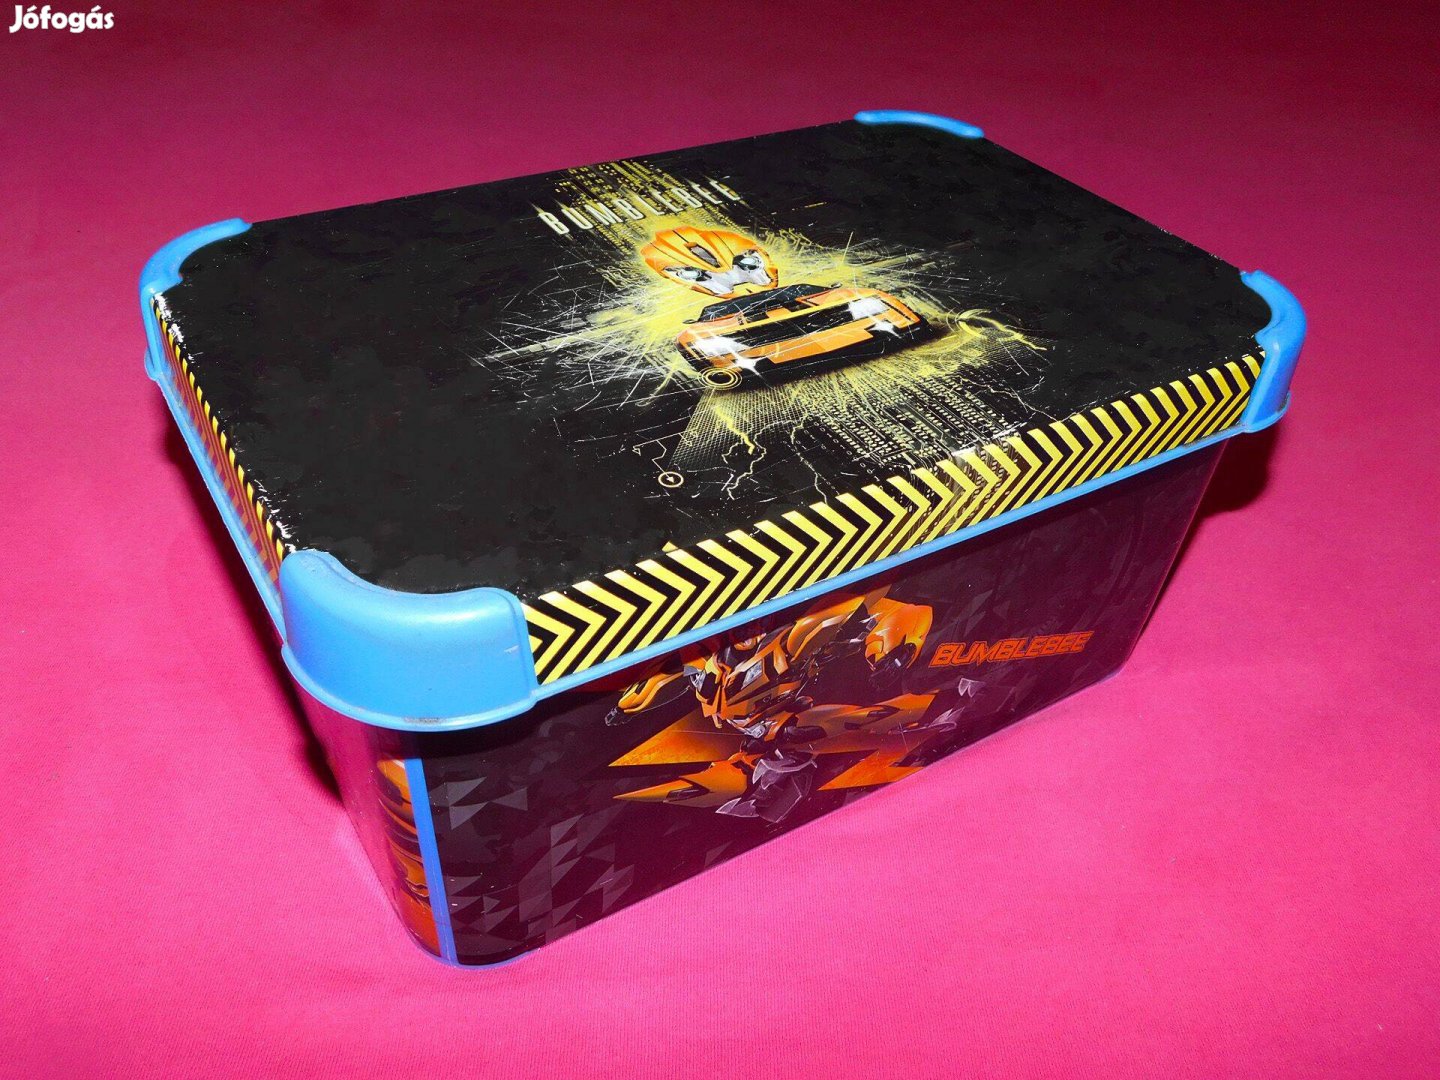 Transformers Prime Űrdongó Bumblebee játéktároló doboz 18 X 28 X 30 cm